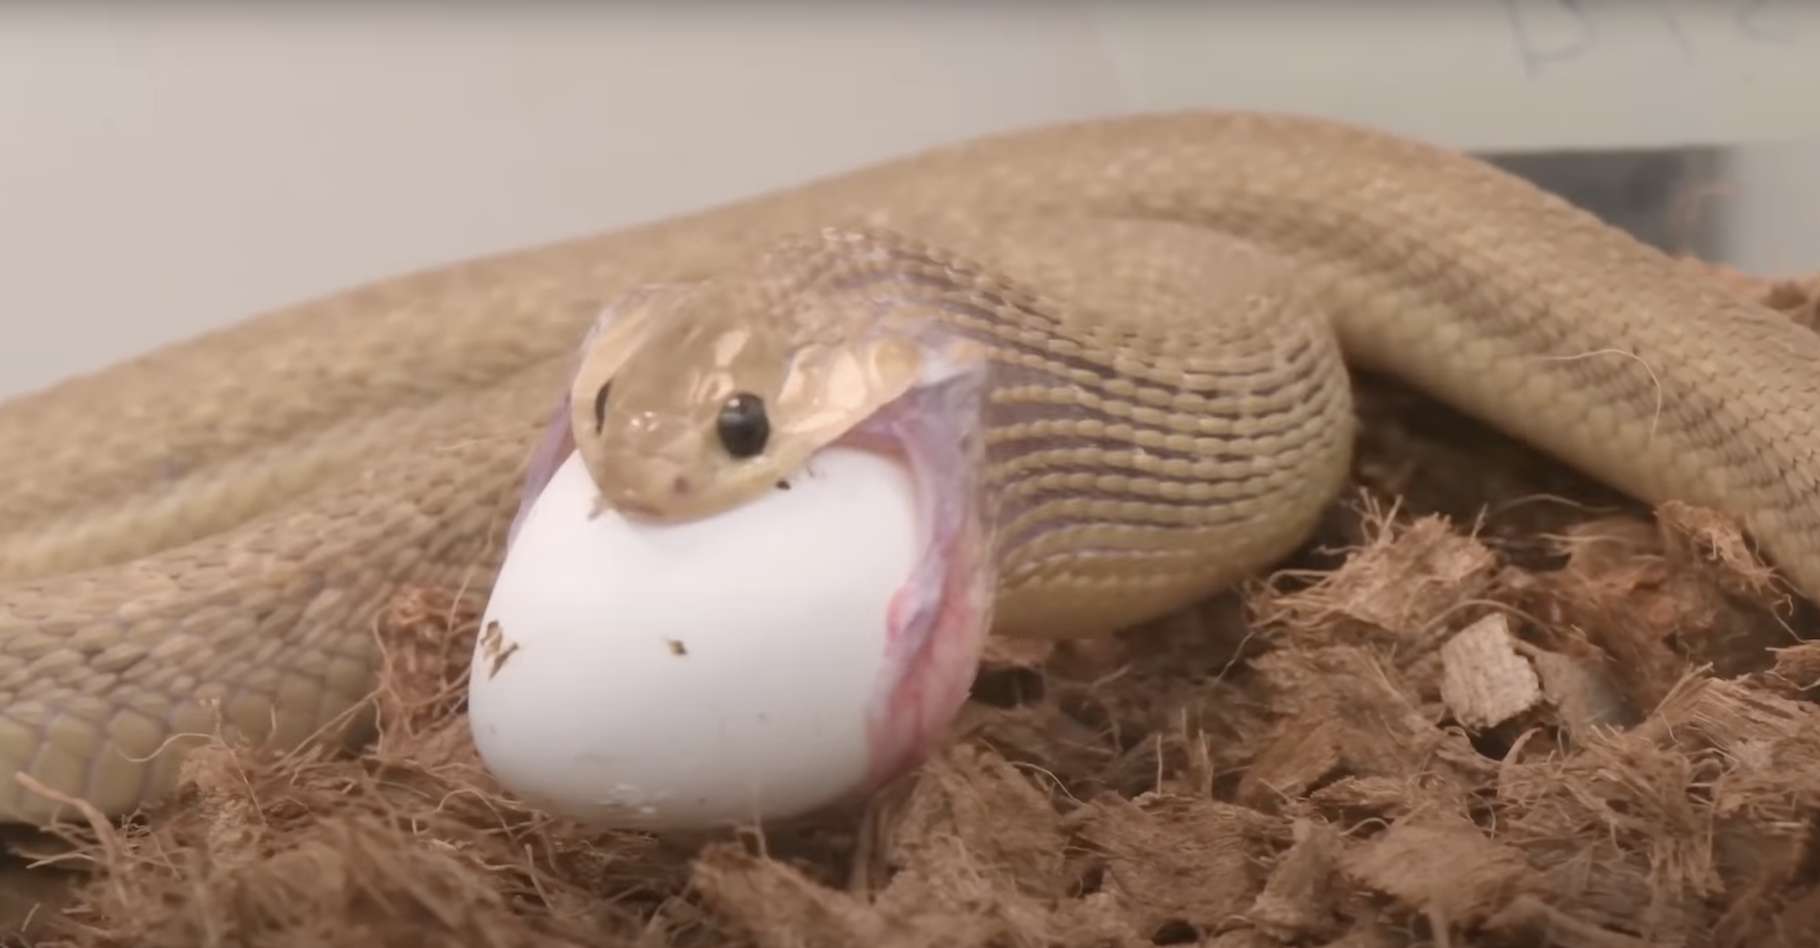 Regardez comment ce petit serpent gobe des œufs plusieurs fois plus gros que sa tête !